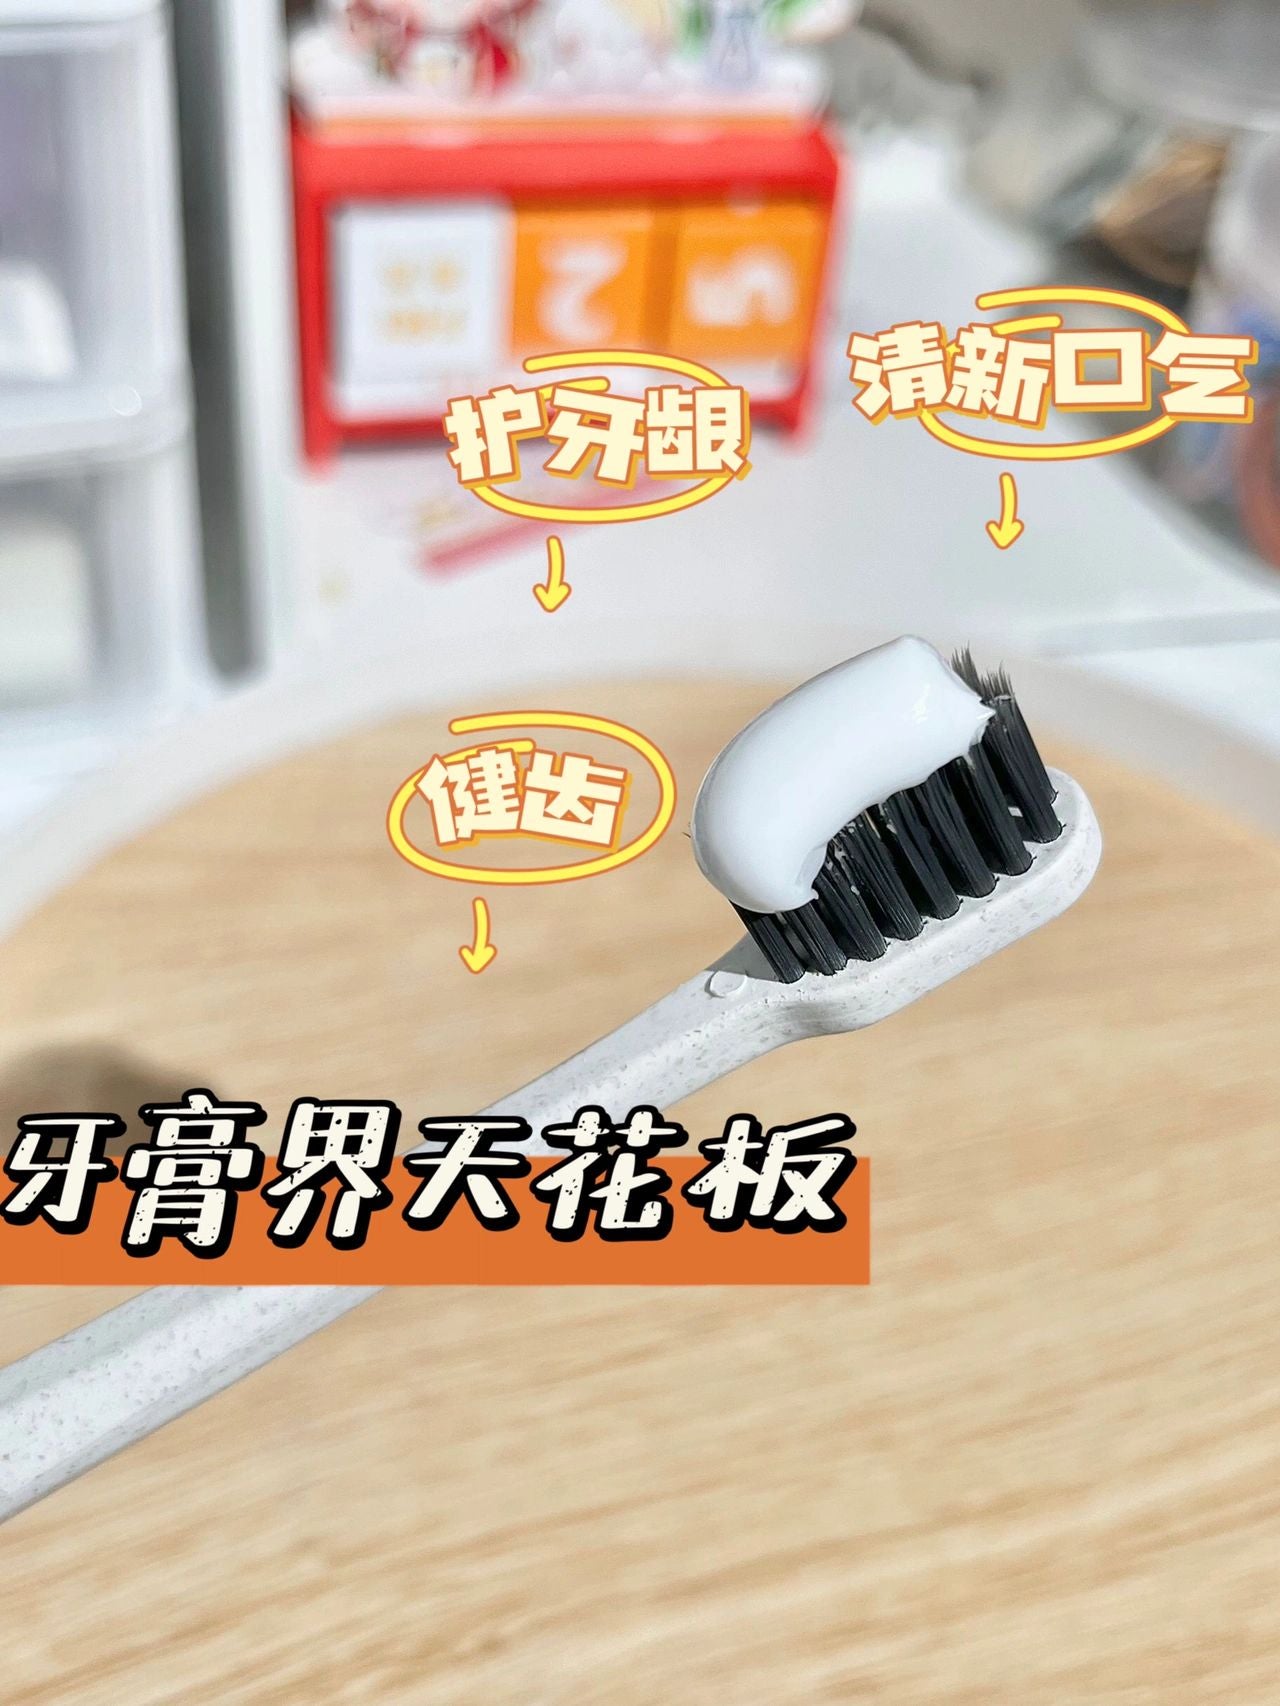 Yunnan Baiyao toothpaste 云南白药牙膏